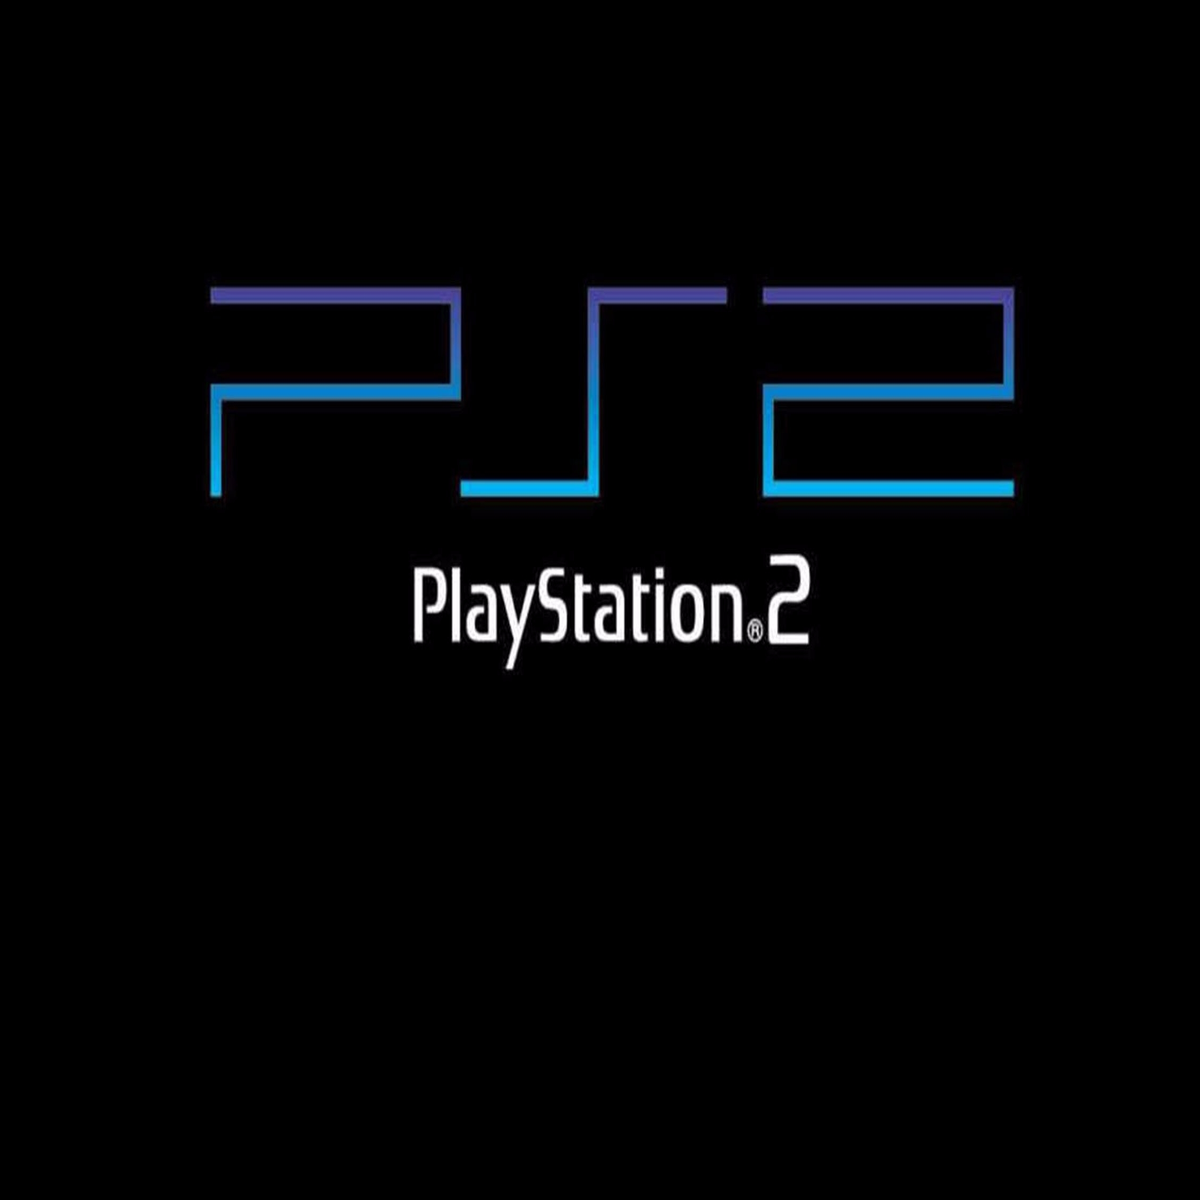 PS3 (CLASSICOS PS1) - WR Games Os melhores jogos estão aqui!!!!